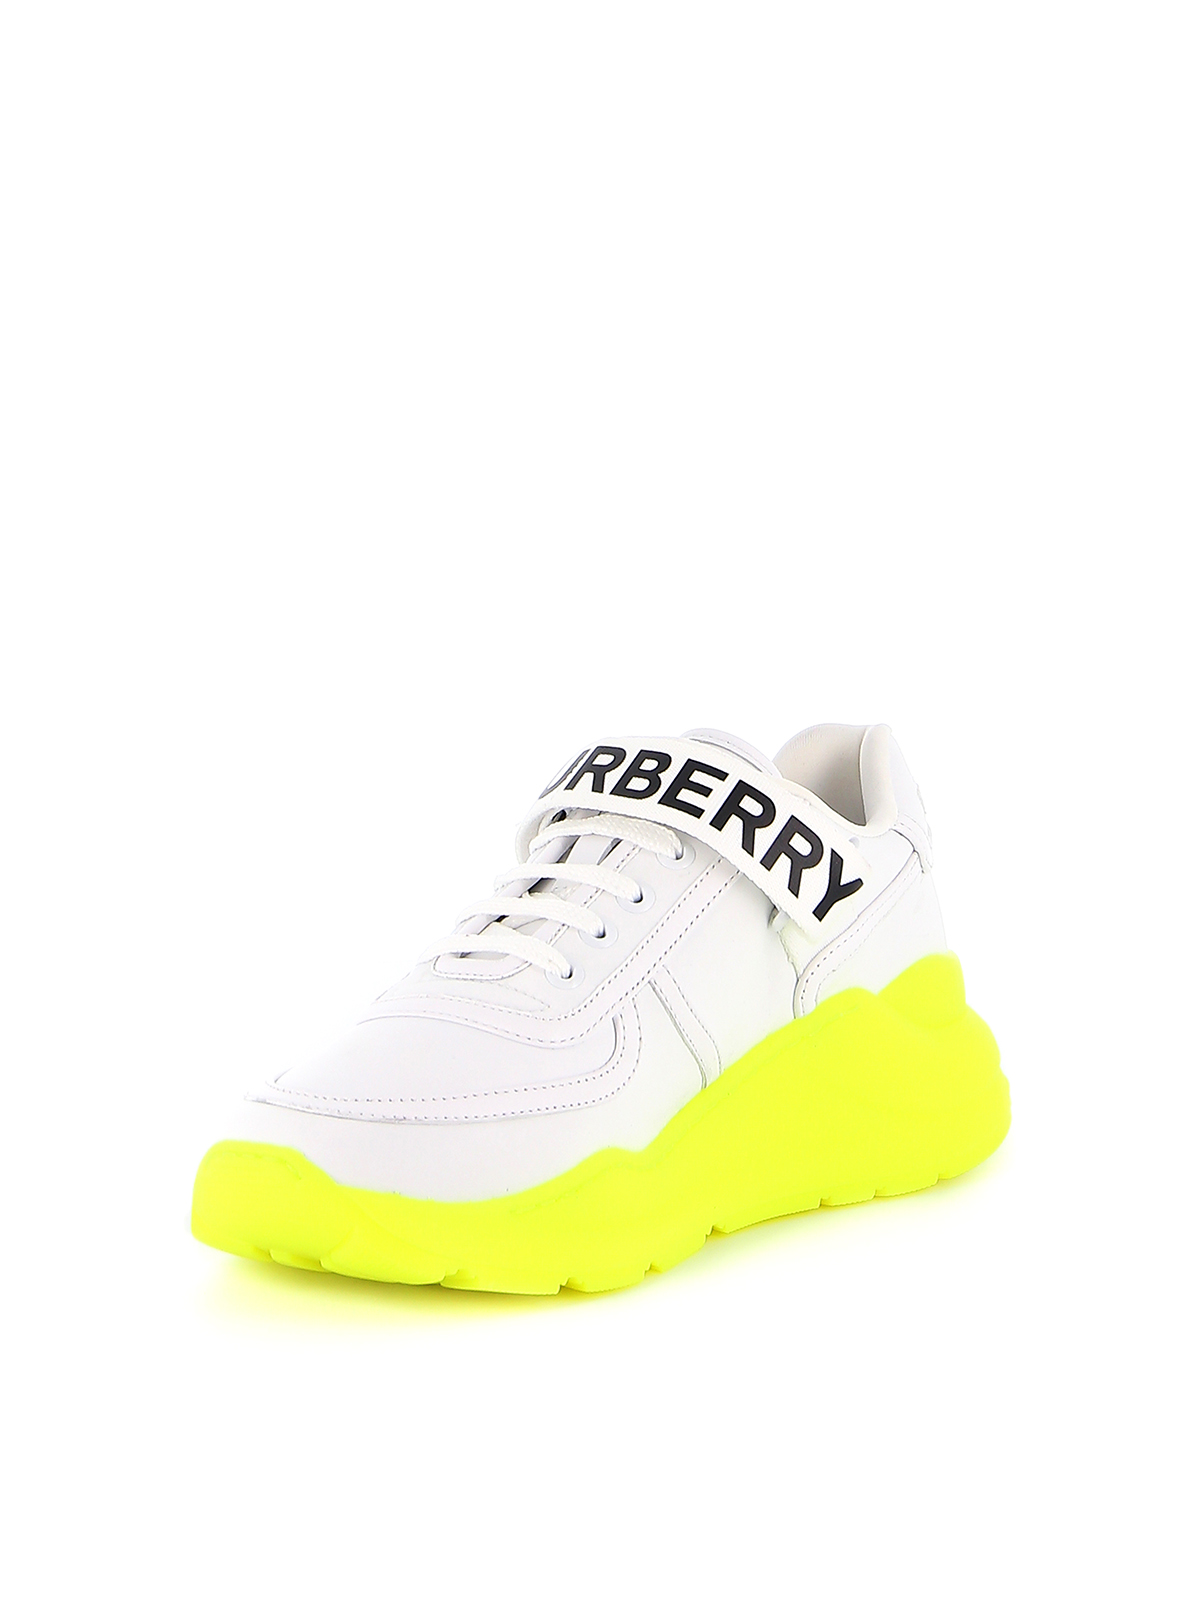 neon sneakers